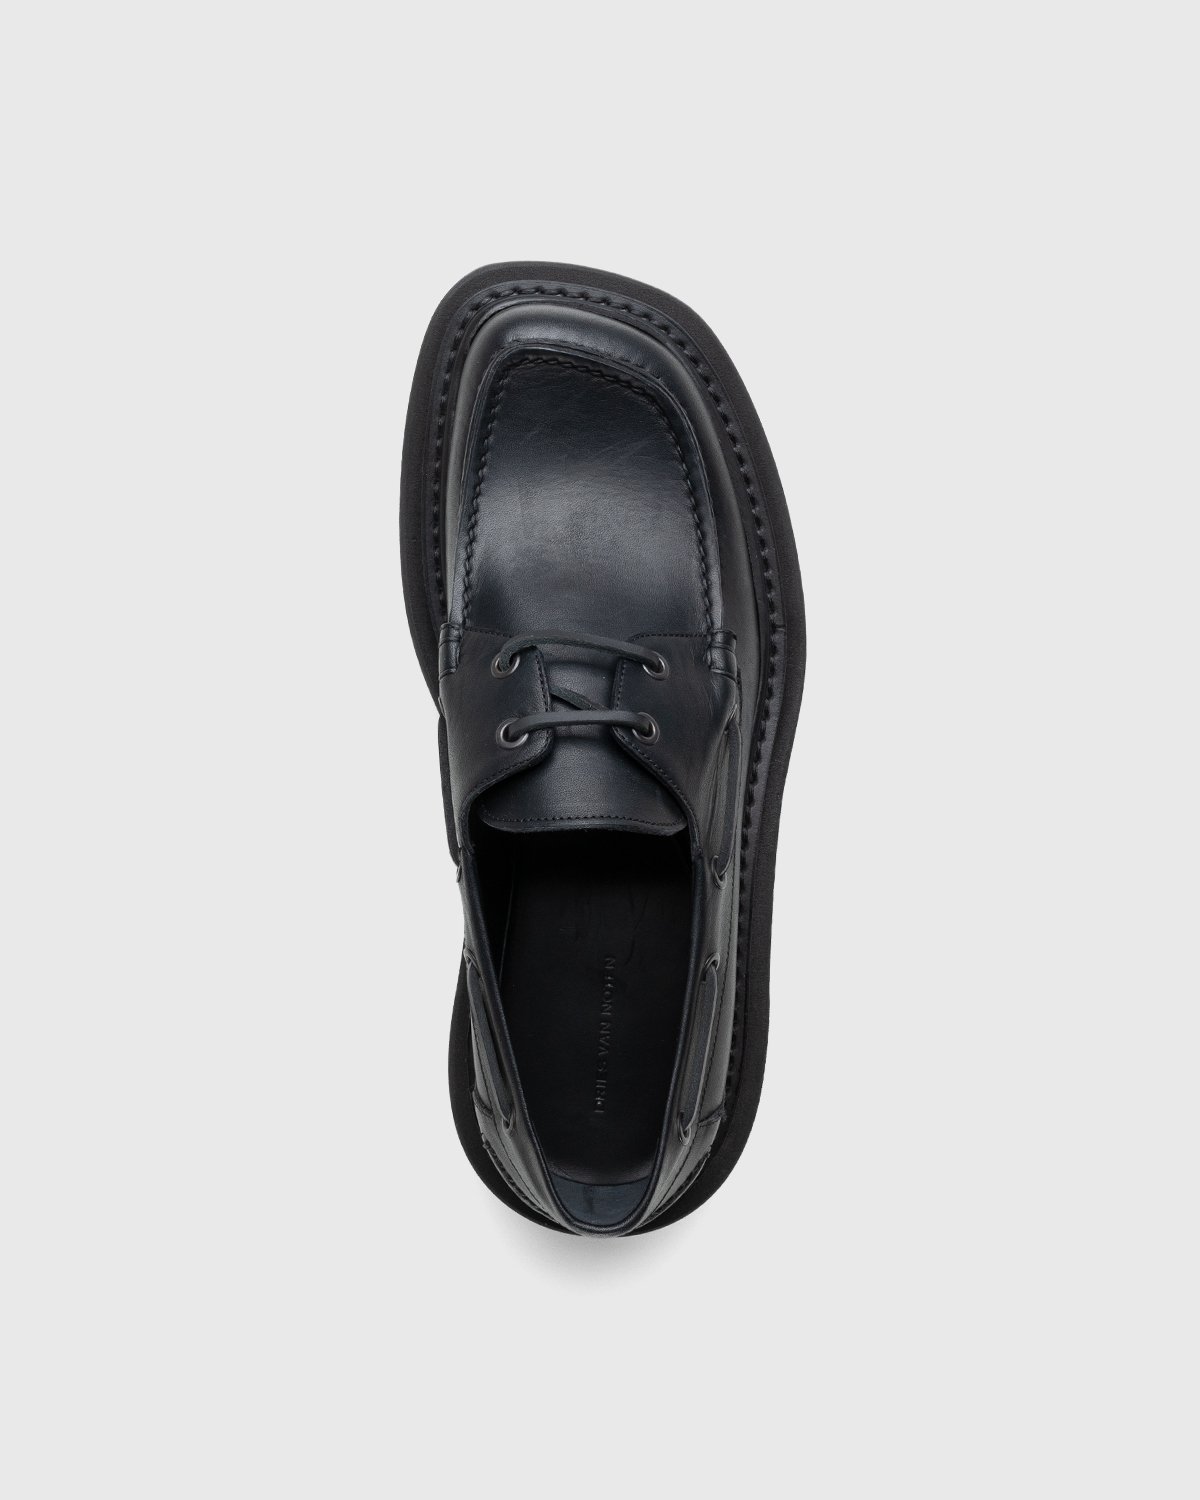 Dries van Noten - Leather Boat Shoe Black - Footwear - Black - Image 5